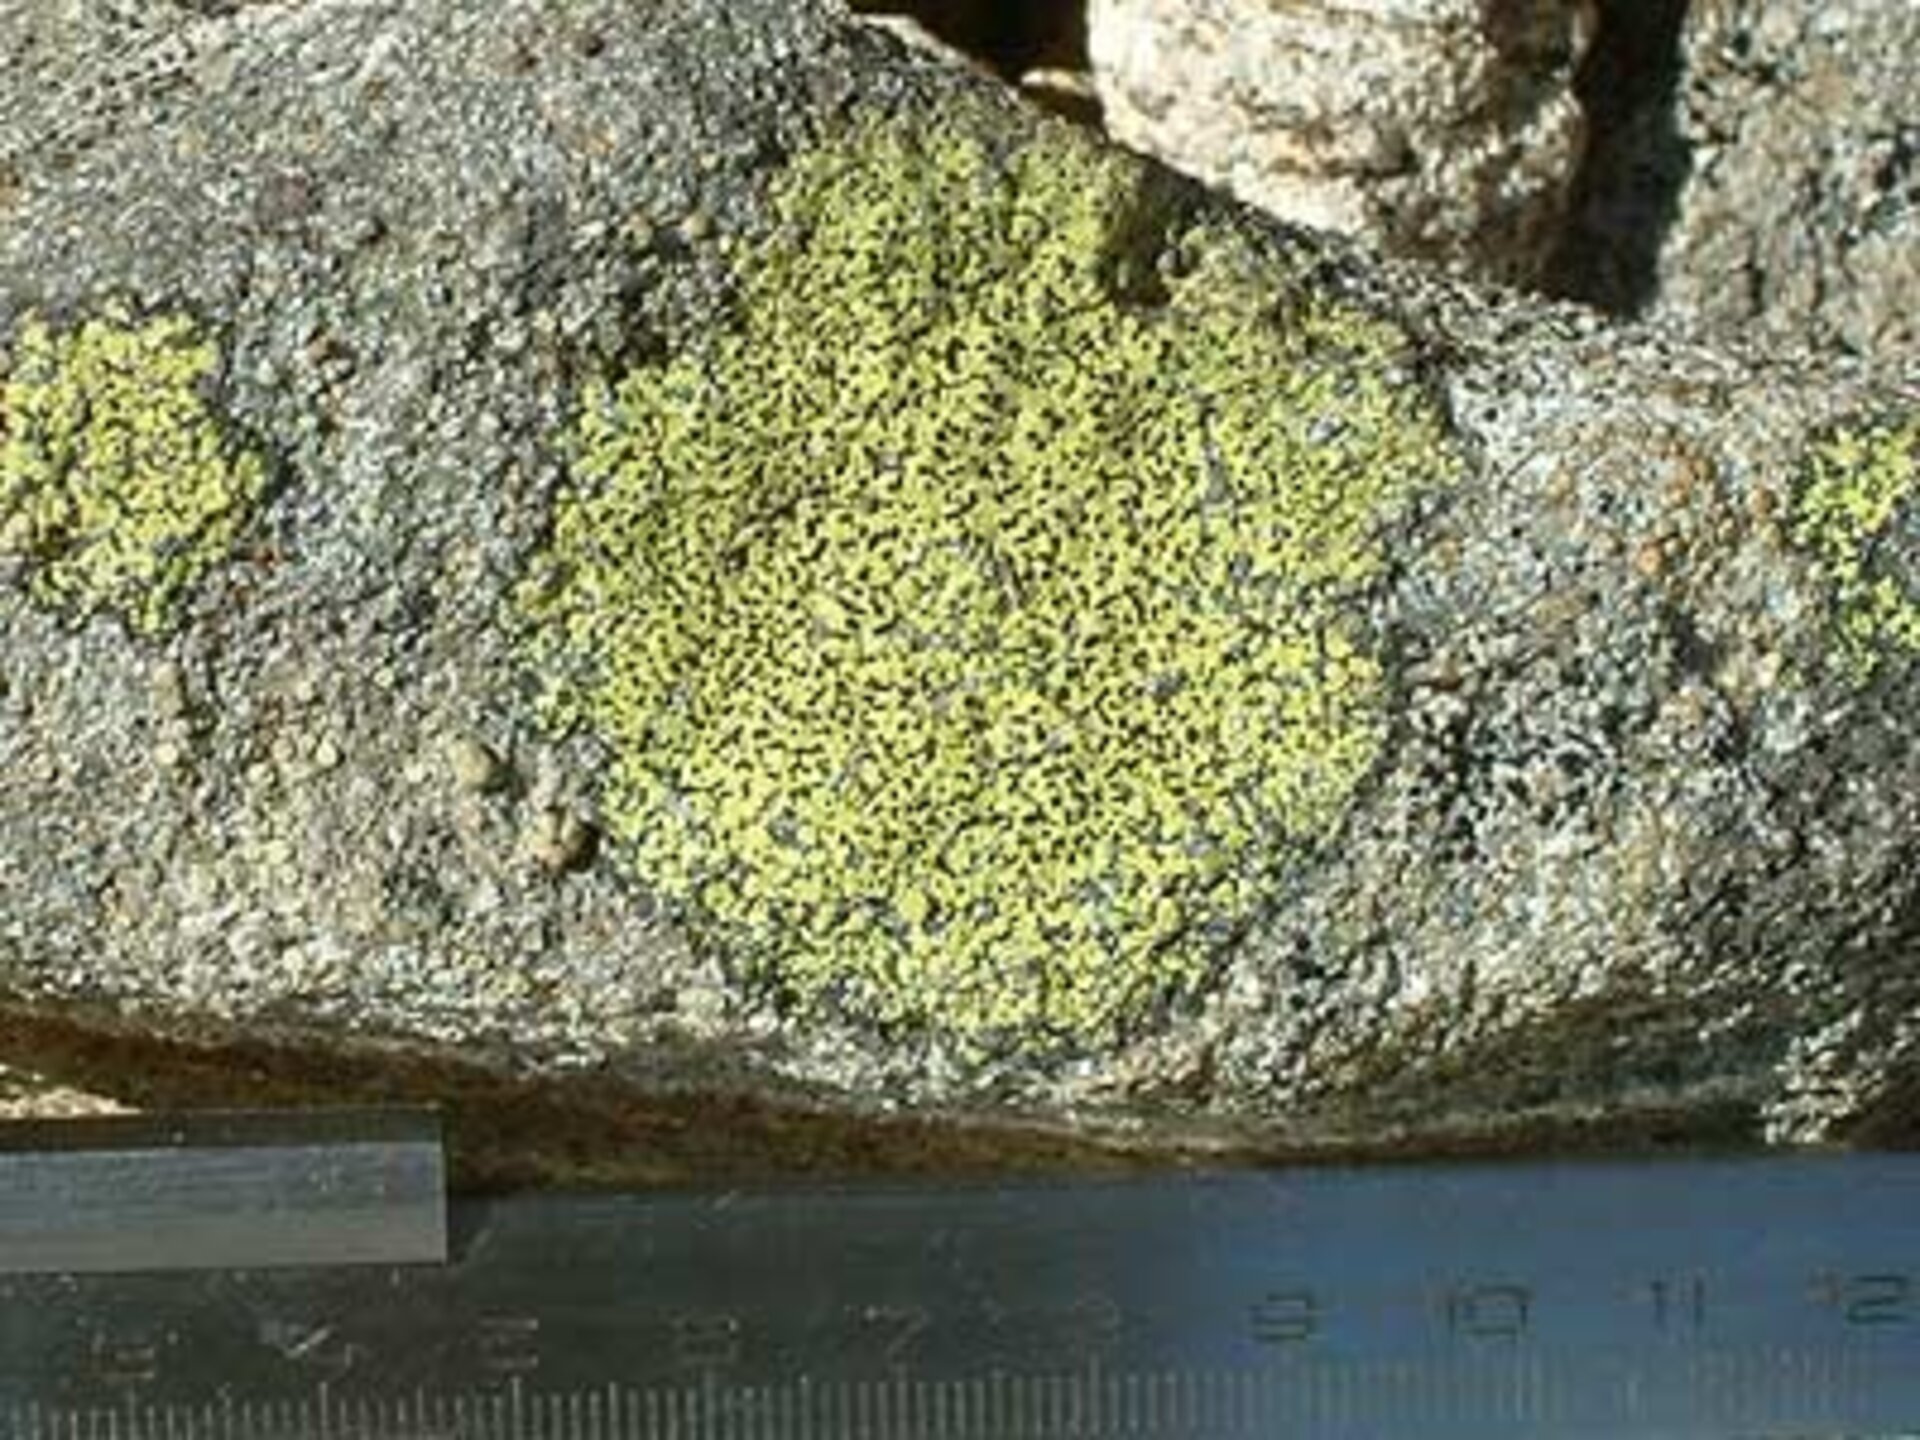 Rhizocarpon geographicum, species of lichen